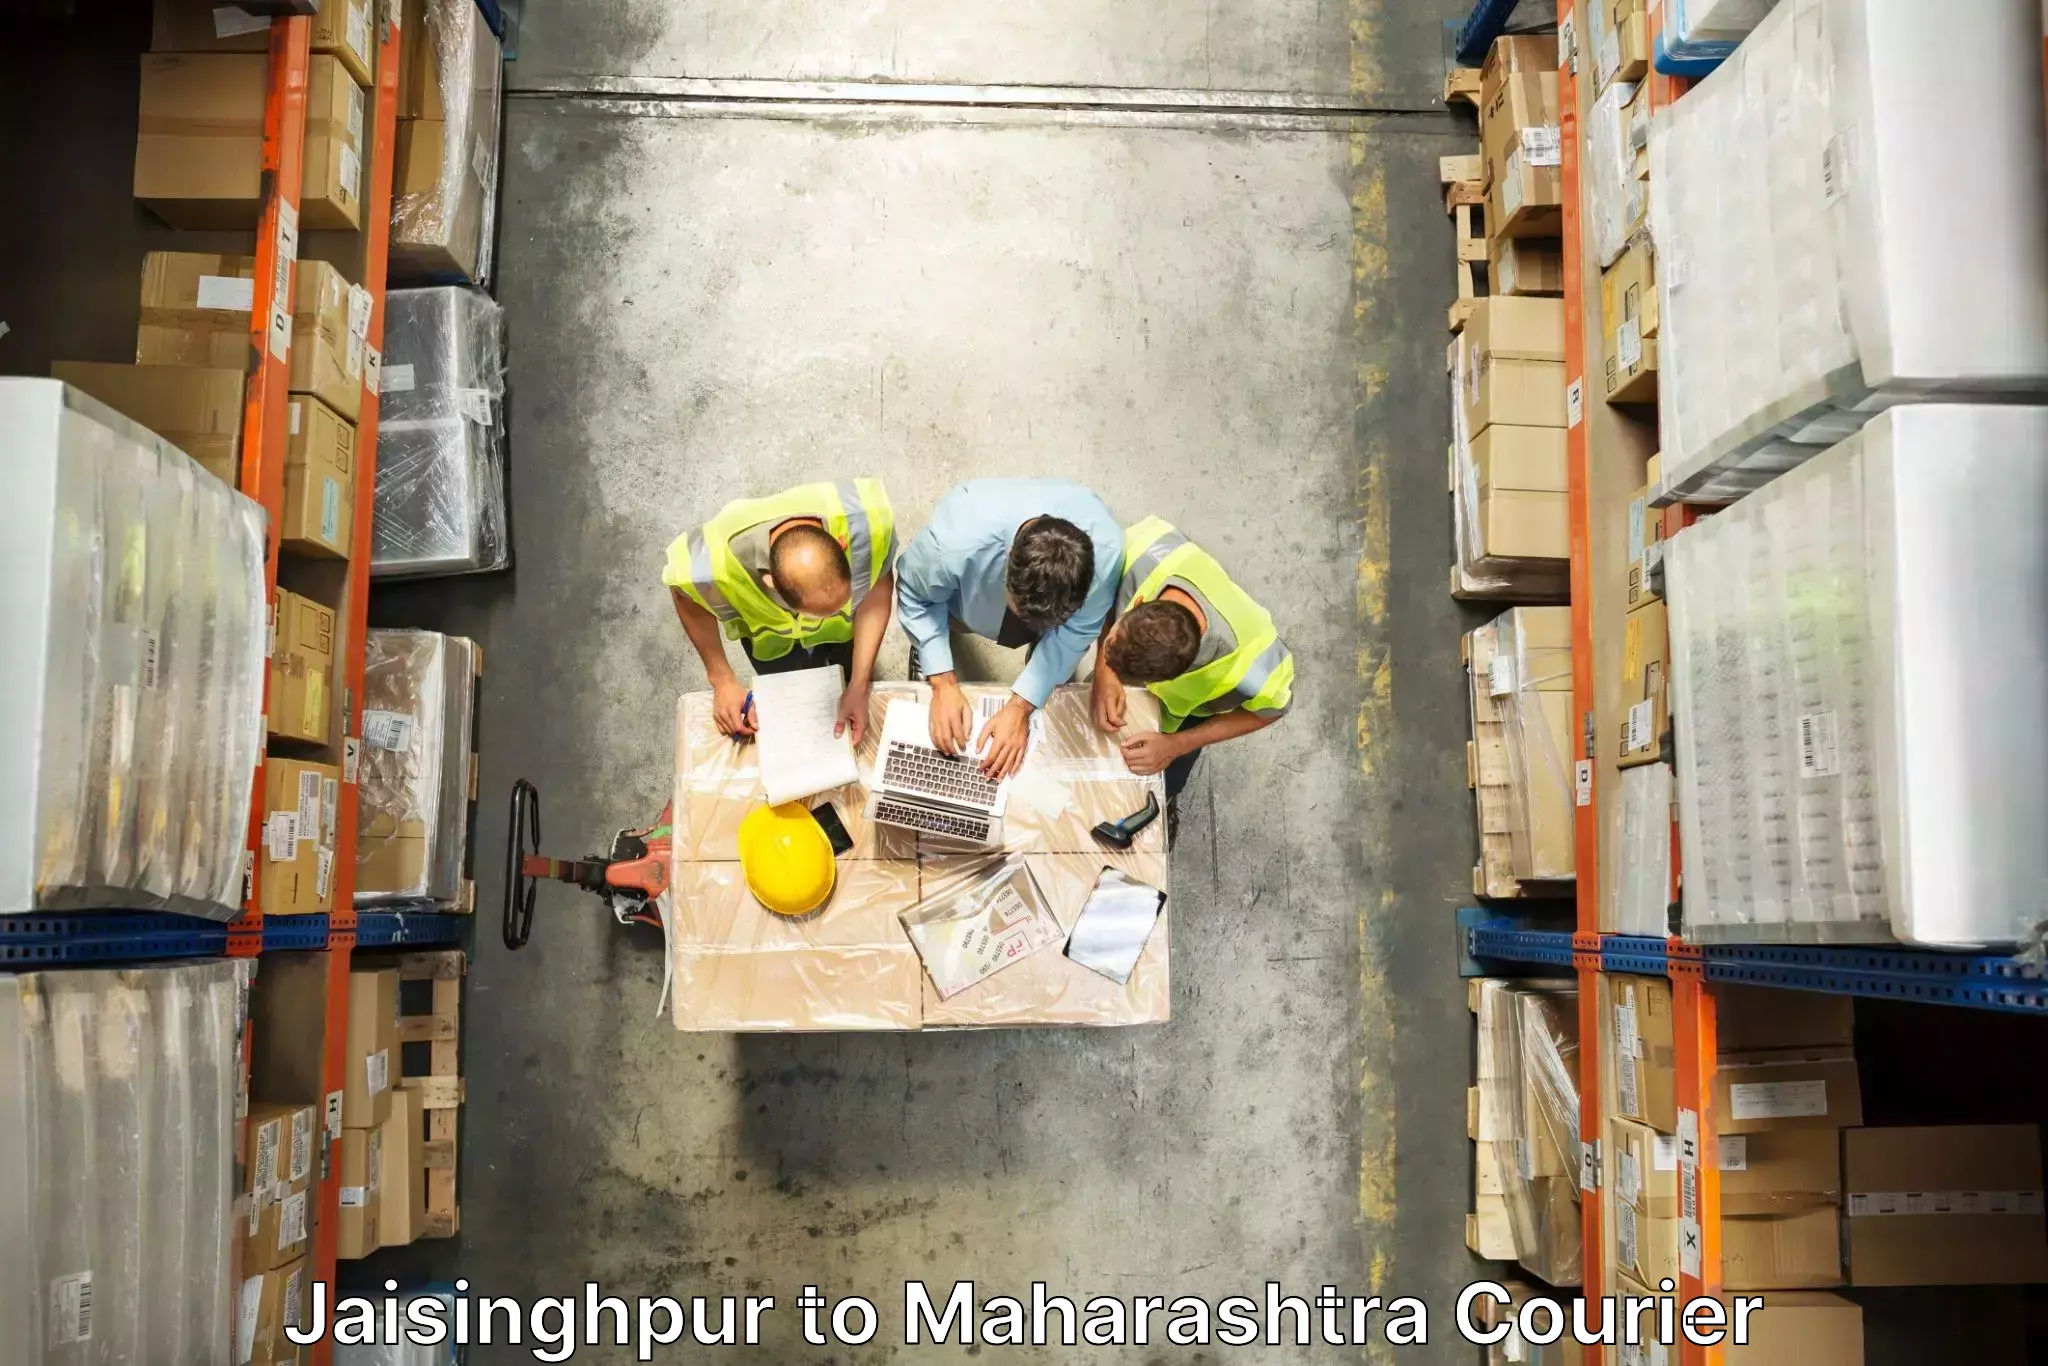 Trusted furniture transport Jaisinghpur to Maharashtra